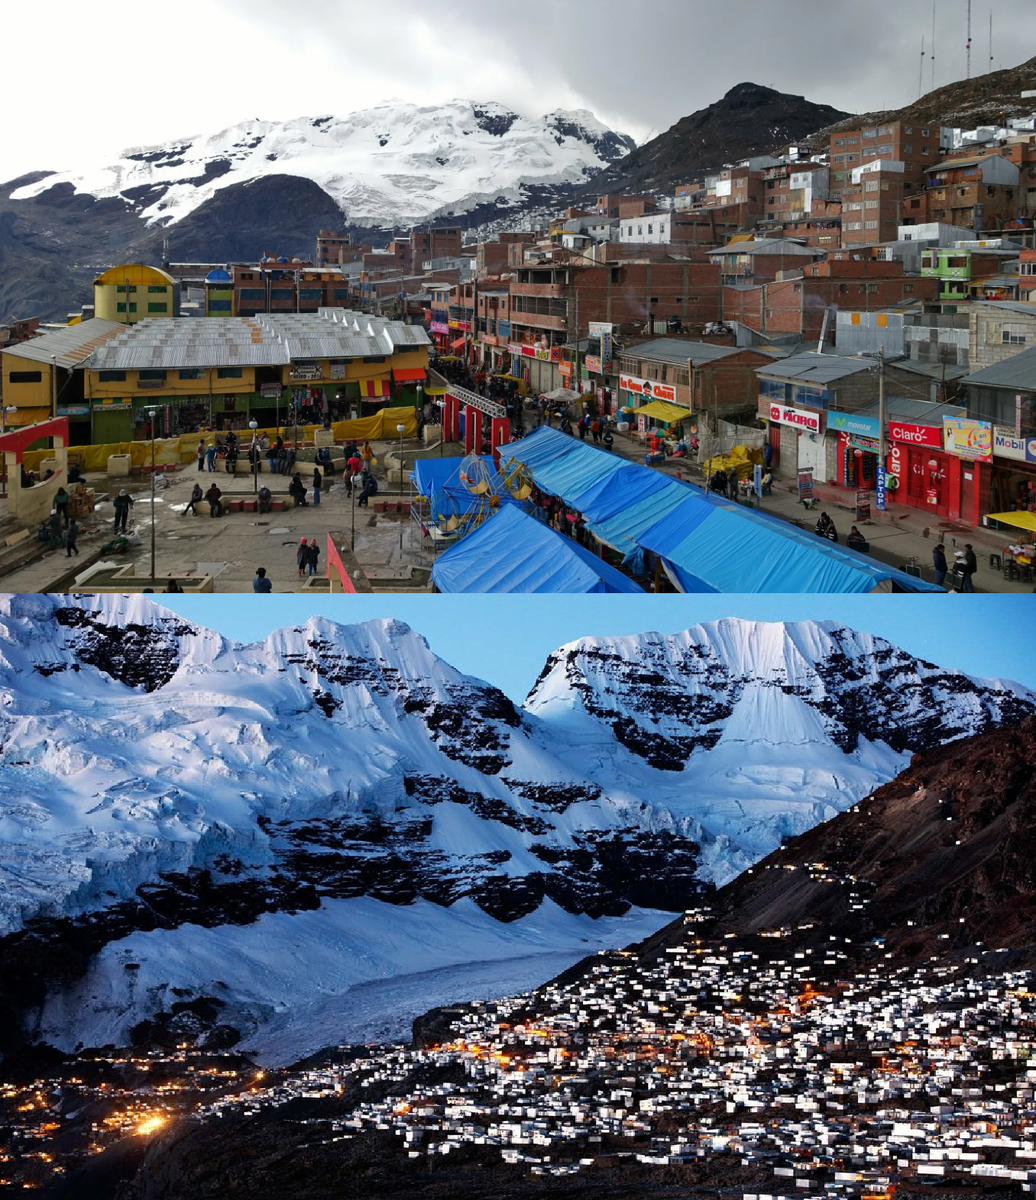 И так,сегодня я хочу вам рассказать о городе,который считается самым высоко расположенным на Земле.  Городок Ла-Ринконада находиться в Перу,находится не далеко от границы с Боливией на западе.